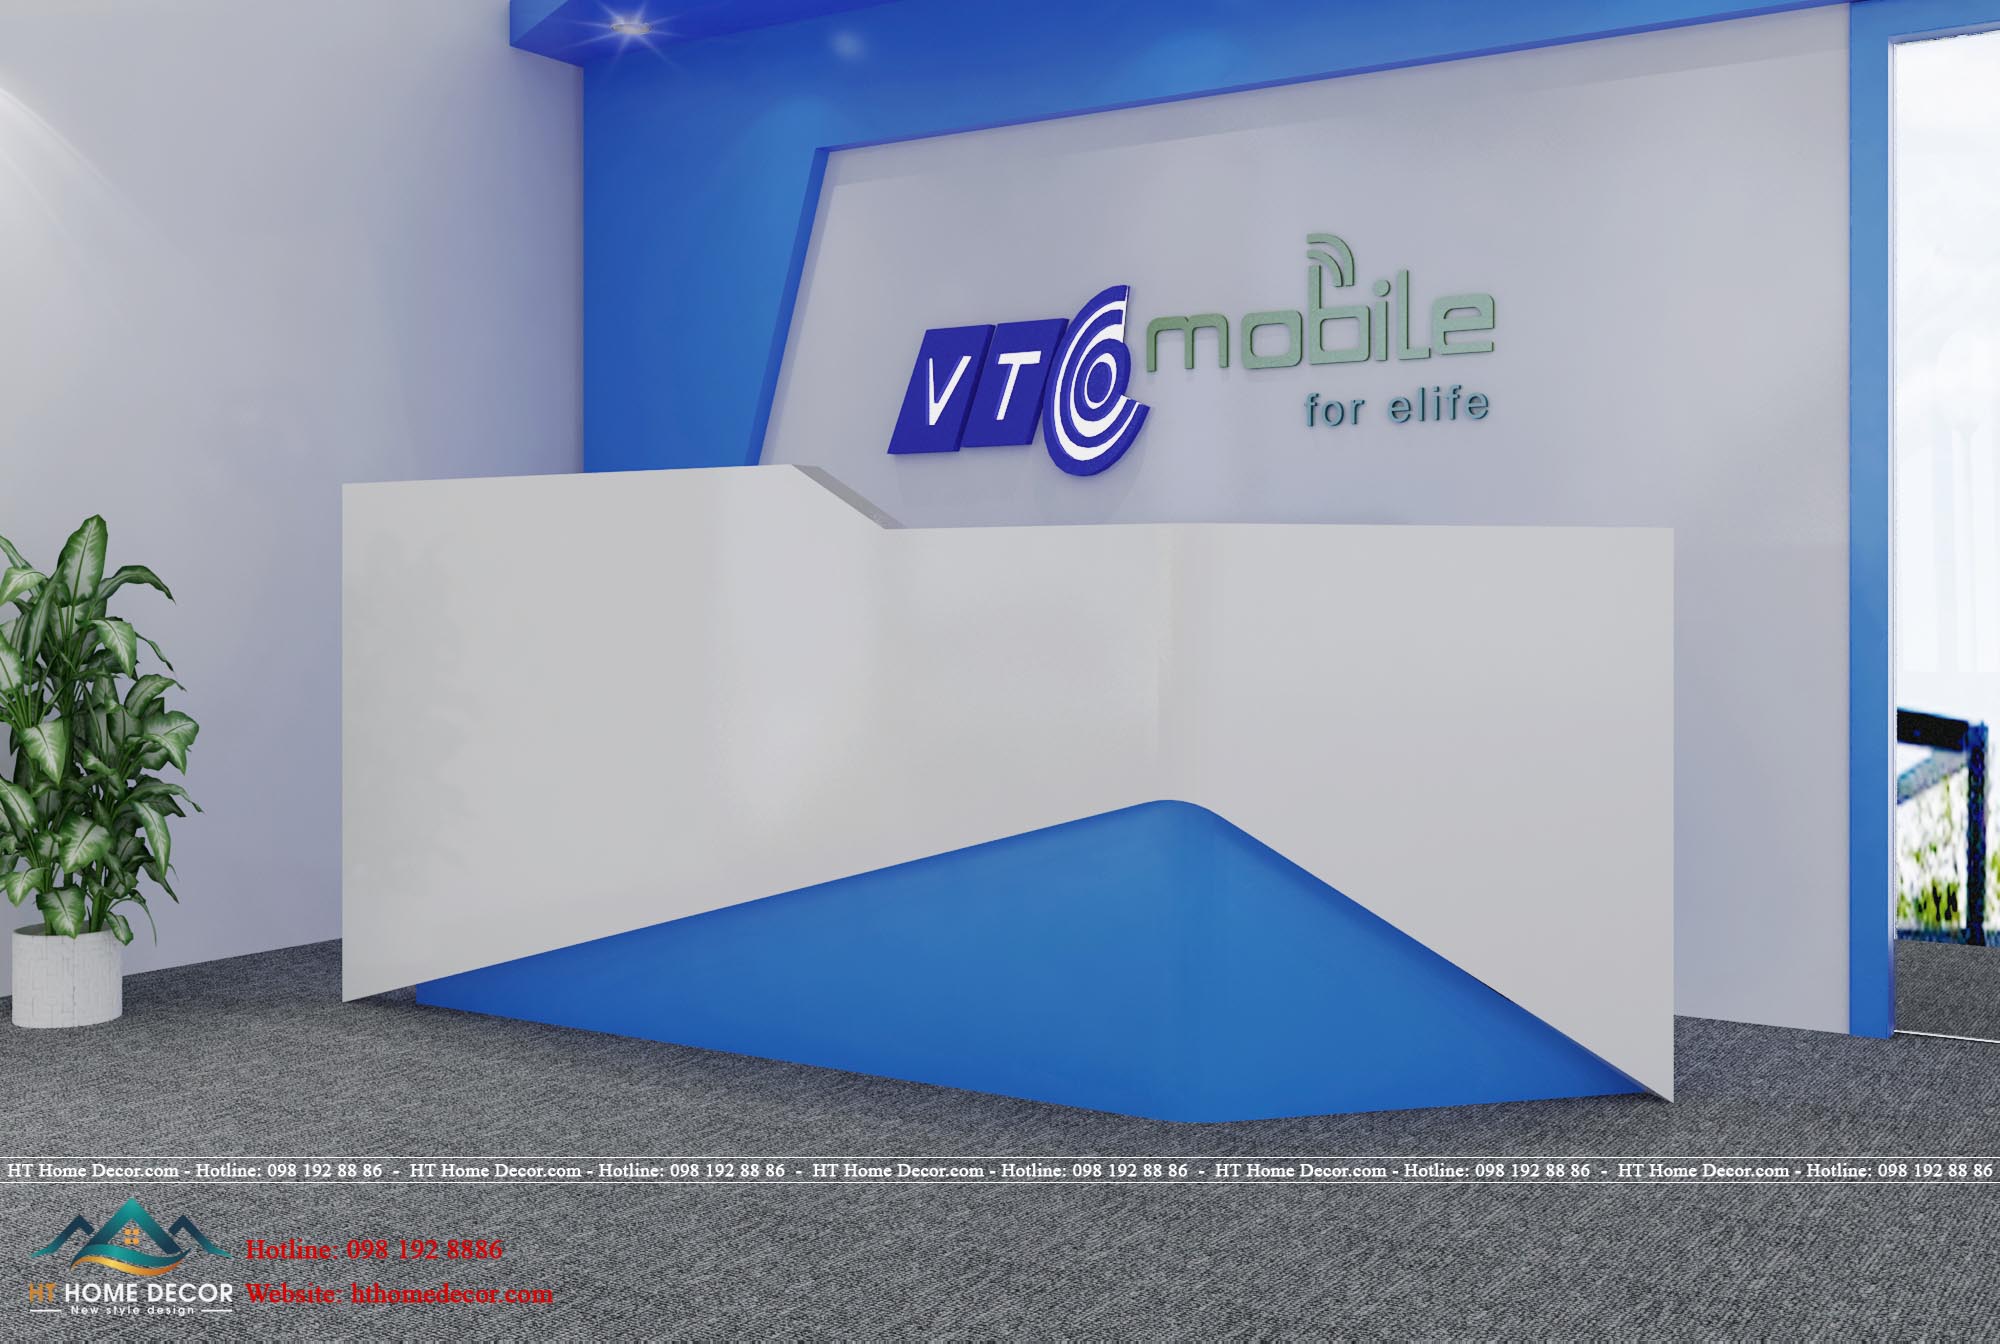 Toàn cảnh chính diện nội thất văn phòng VTC Mobile. Nổi bật với thương hiệu với nền trắng và gam chữ xanh đậm, xanh lá cây.